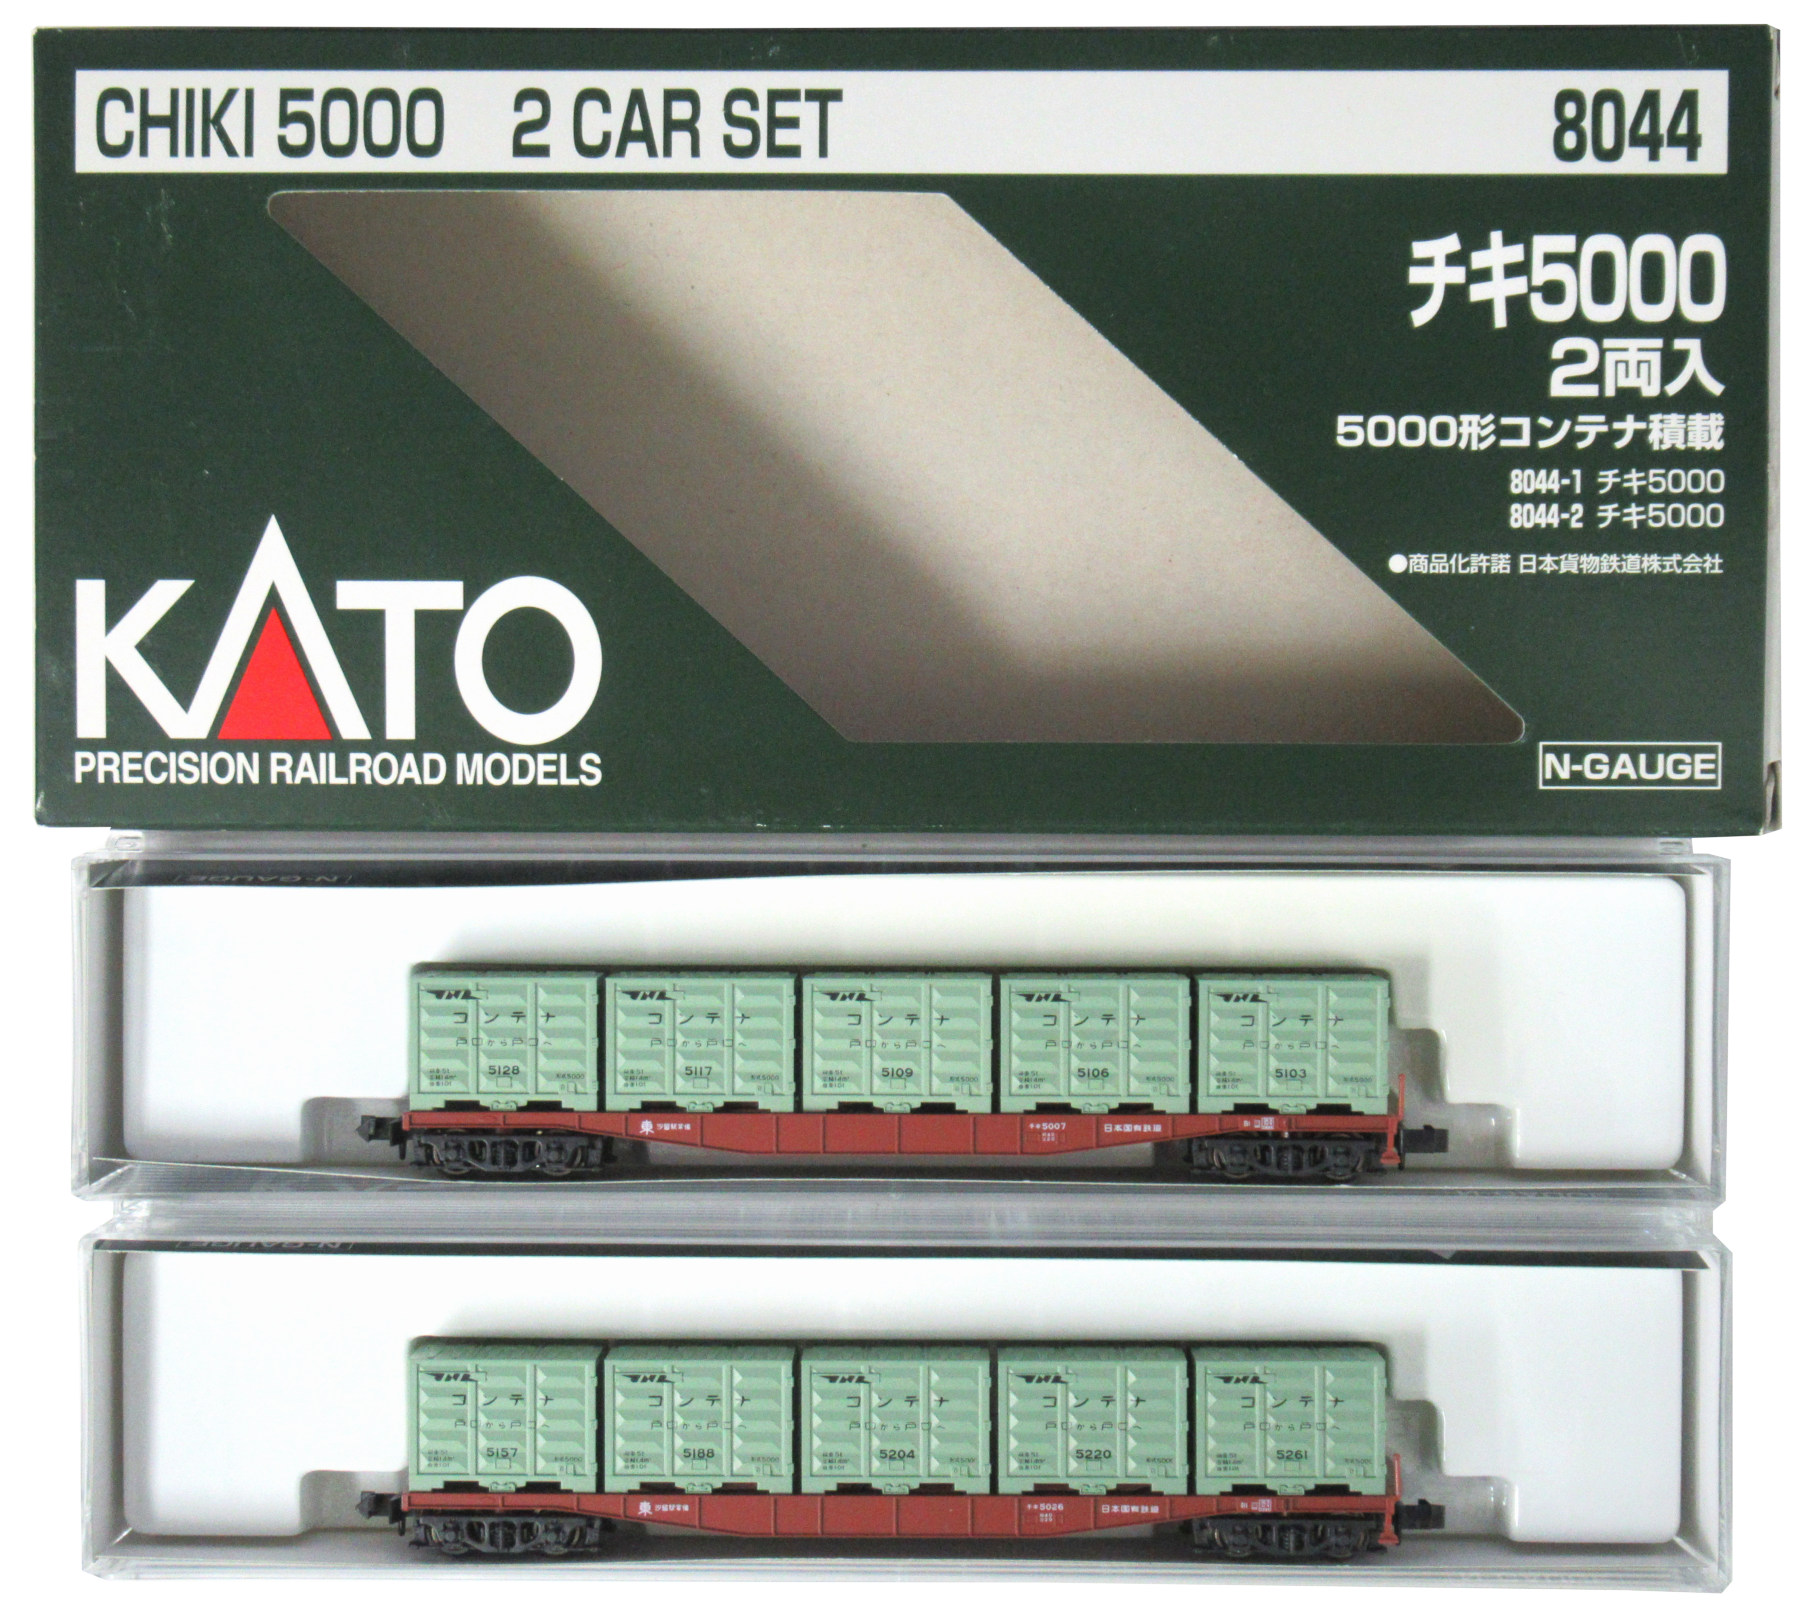 8044 KATO チキ5000 5000形コンテナ積載 2両入×2箱